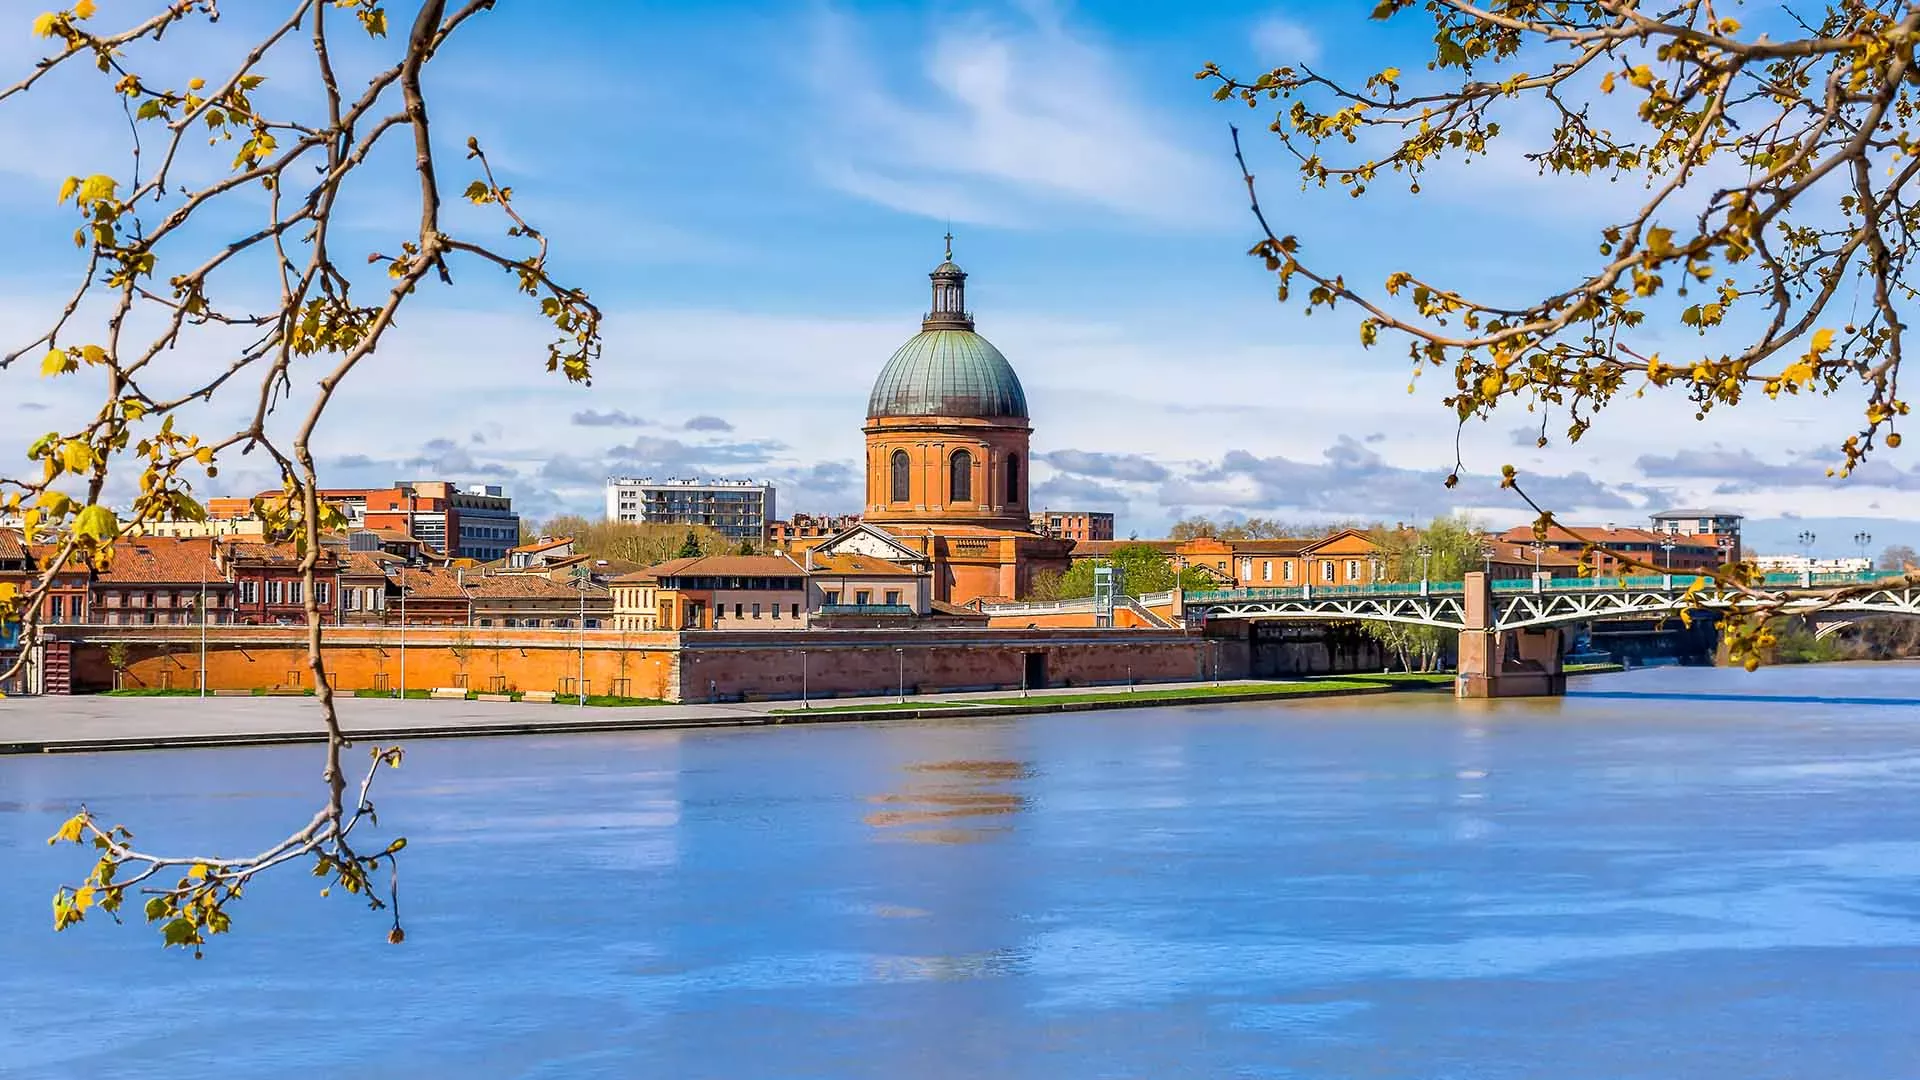 Acheter en Occitanie : 5 villes où s’installer - Toulouse | Kaufman & Broad